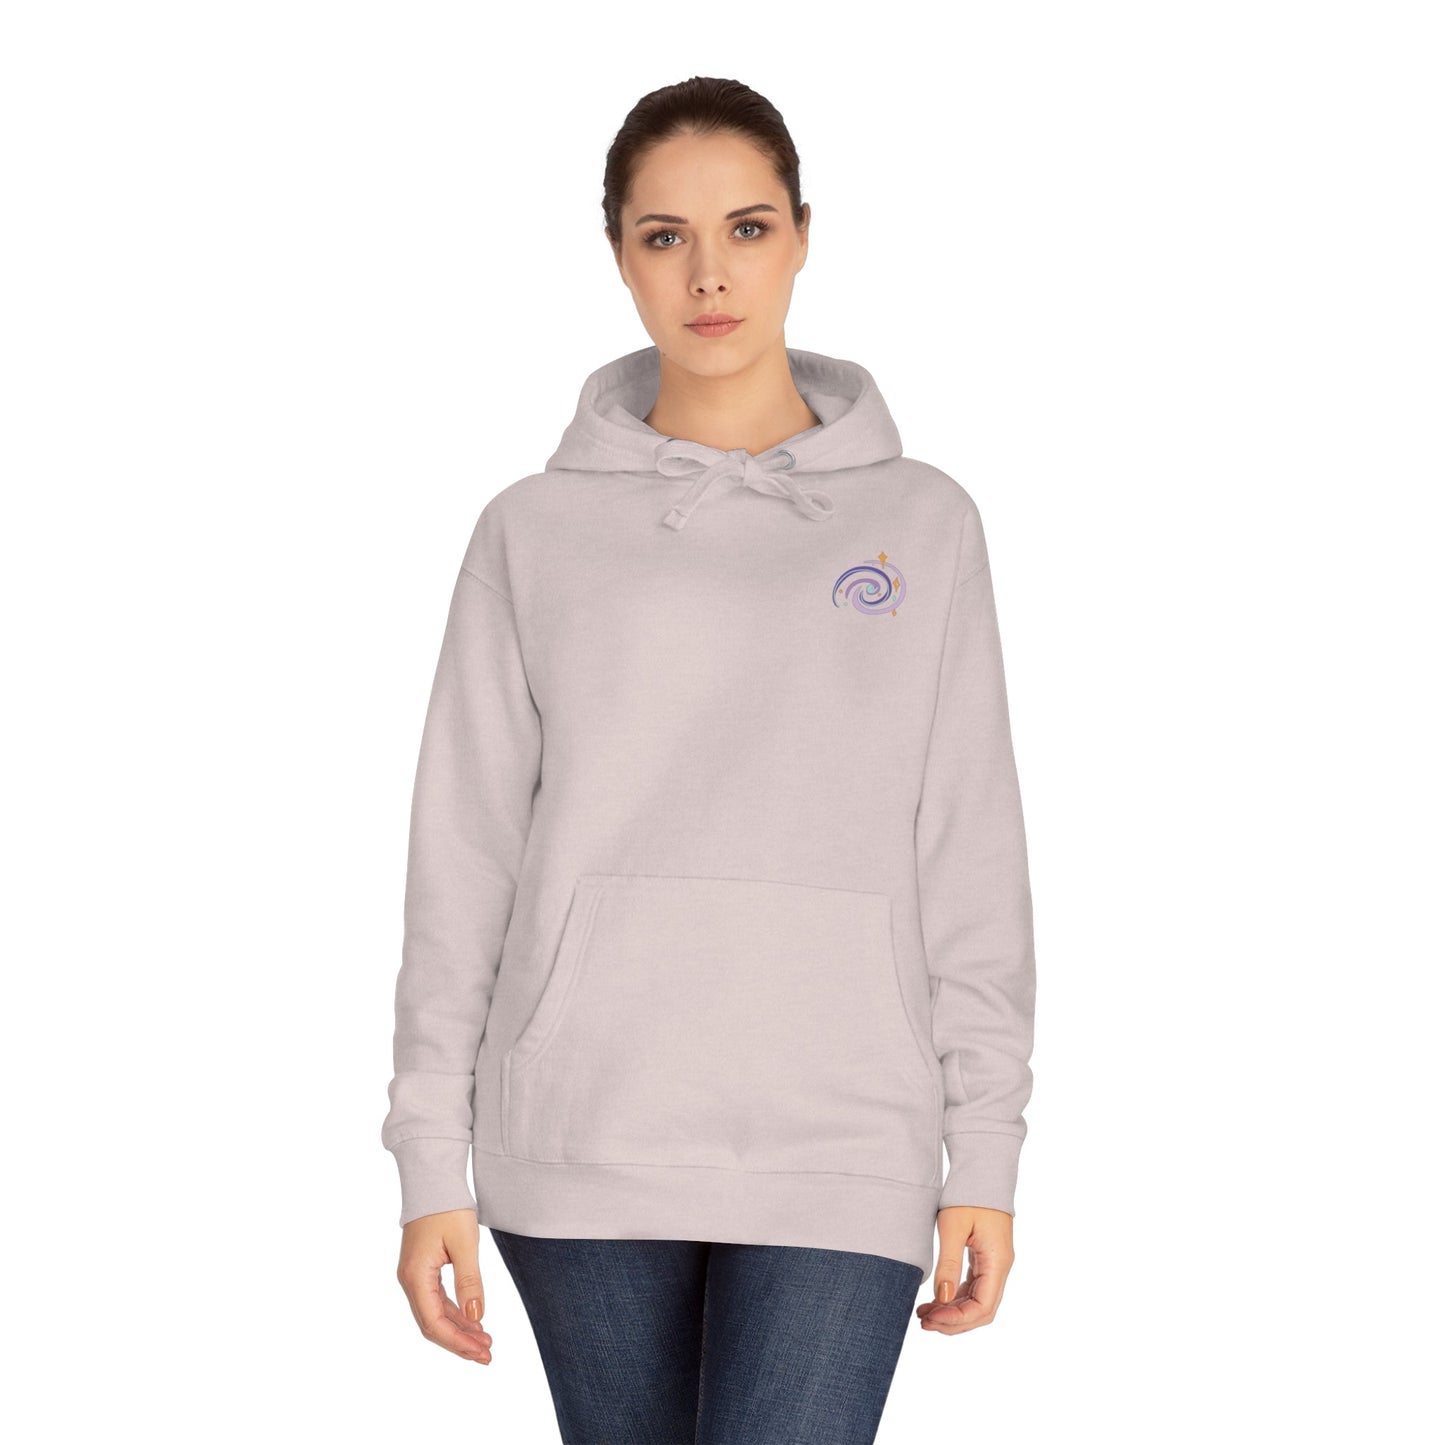 I Need My Space Astronaut Unisex Fleece Hoodie Sizes S-3X